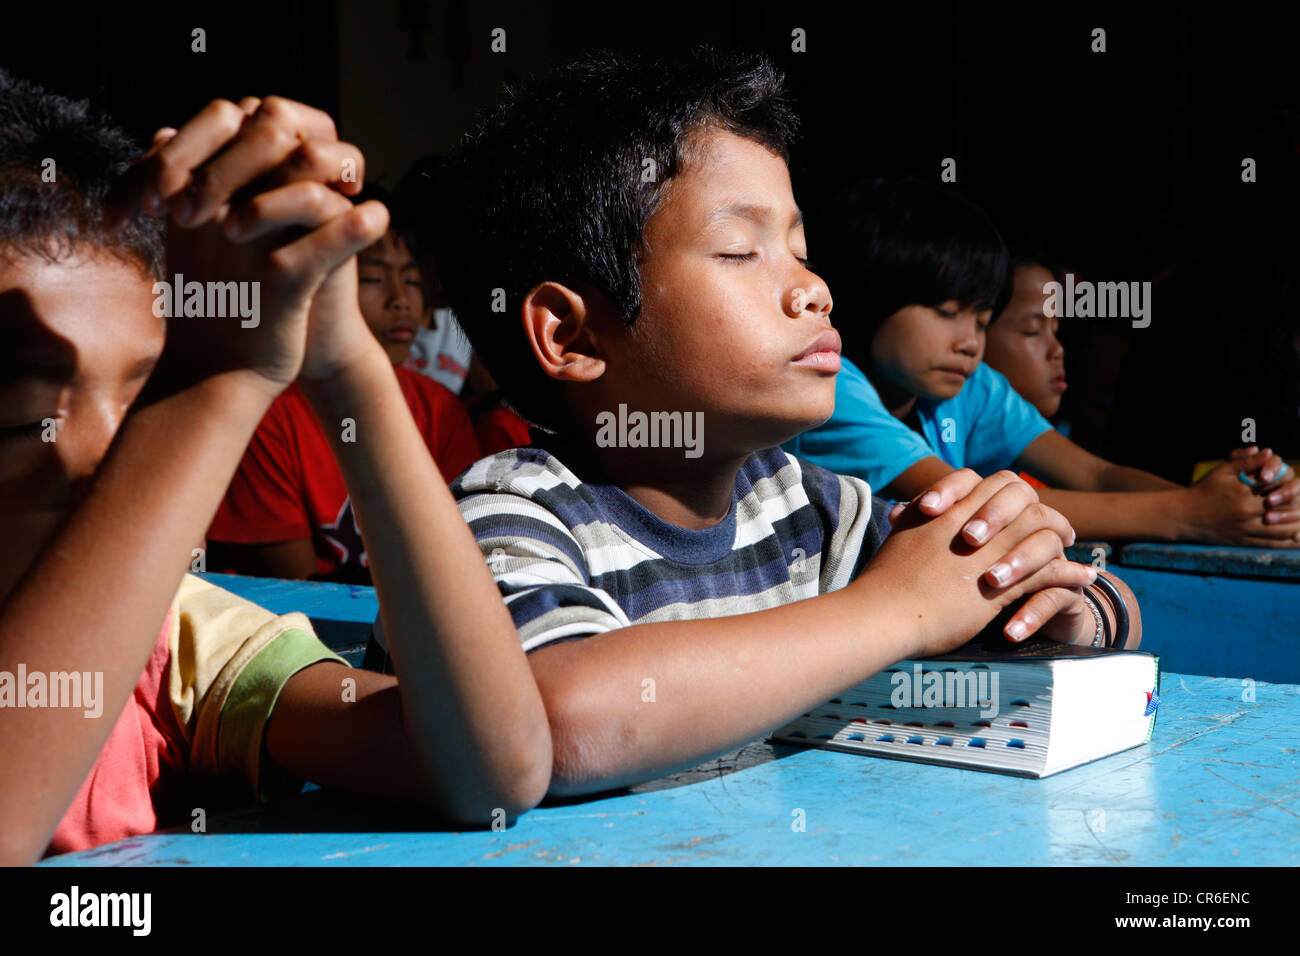 La prière des enfants, stade bientot l'orphelinat, Kabanjahe, région de Batak, Sumatra, Indonésie, Asie du sud-est Banque D'Images